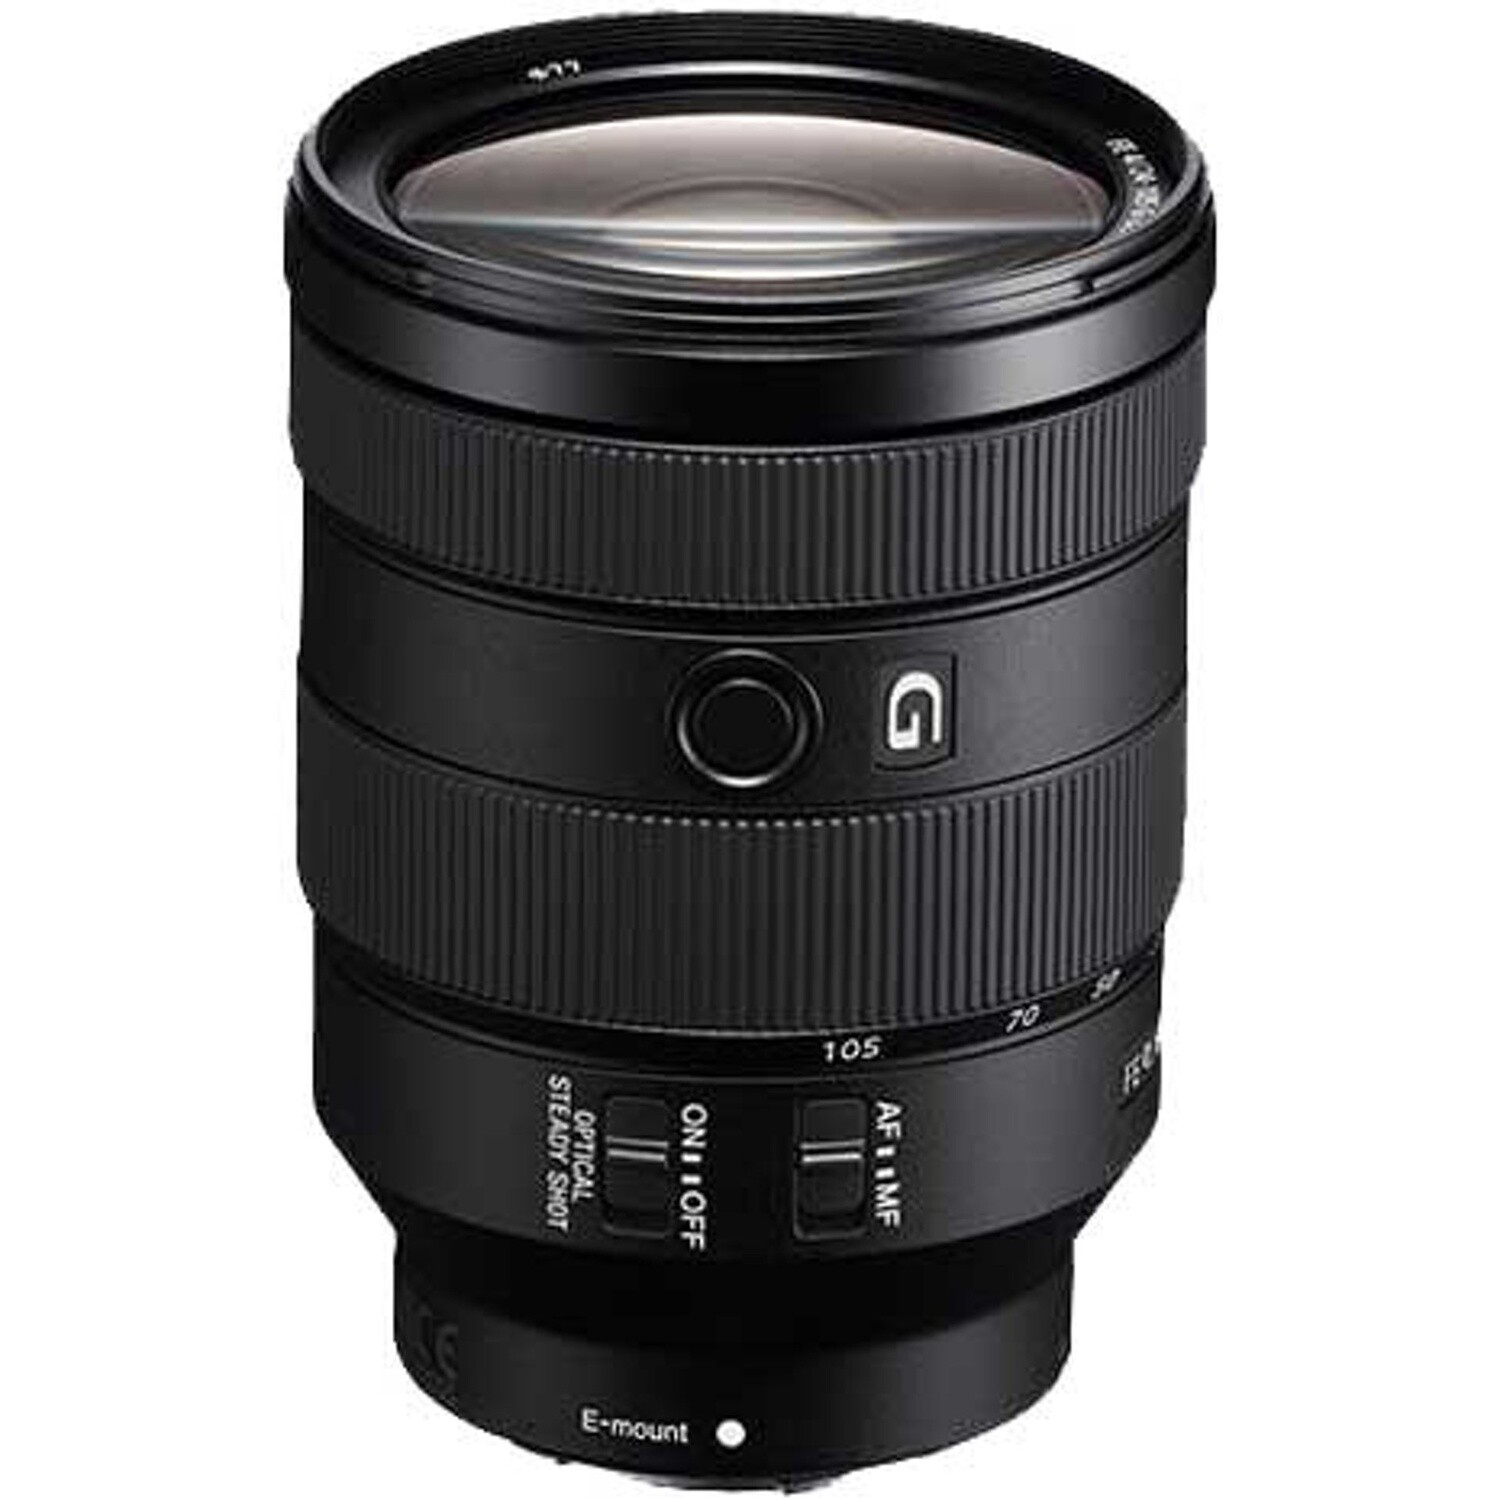 Sony FE 24-105mm F4 G OSS (E-Mount) Lens